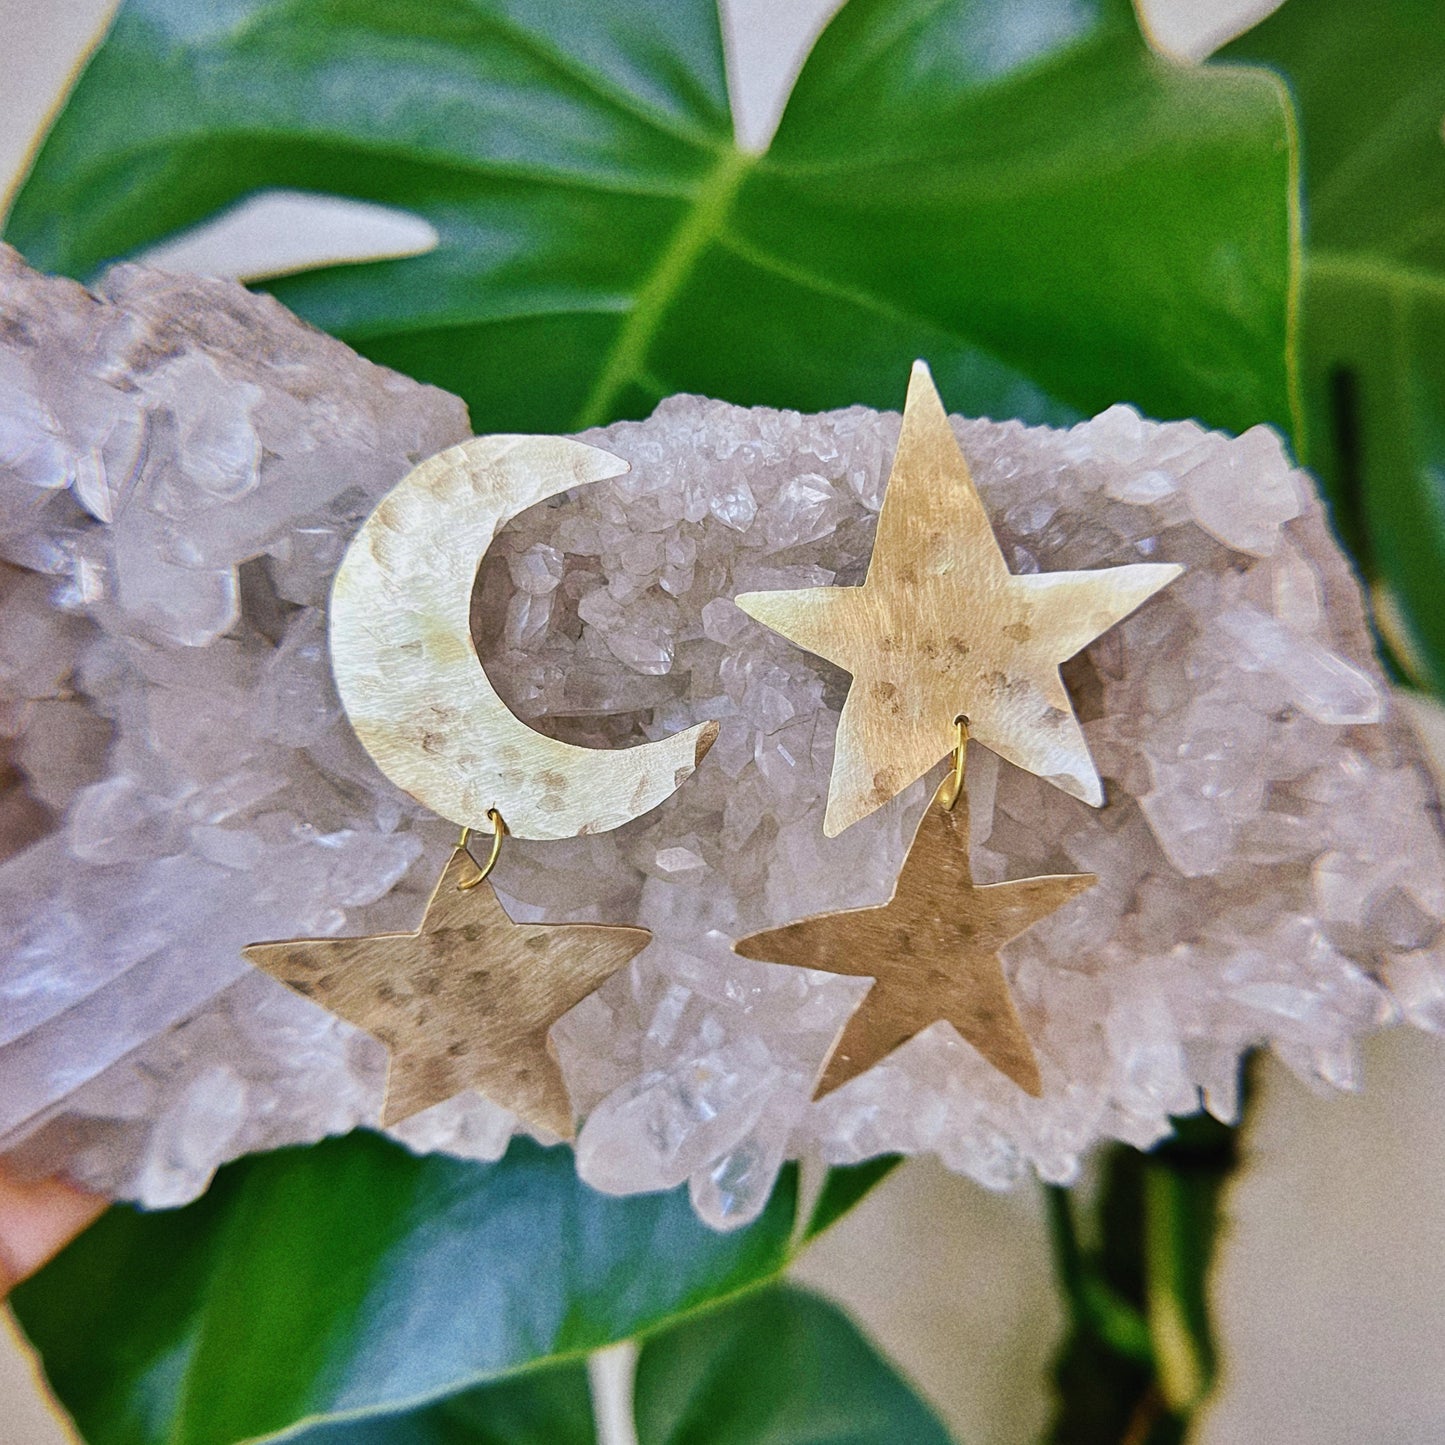 moon & star statement earrings - celestial statement earrings